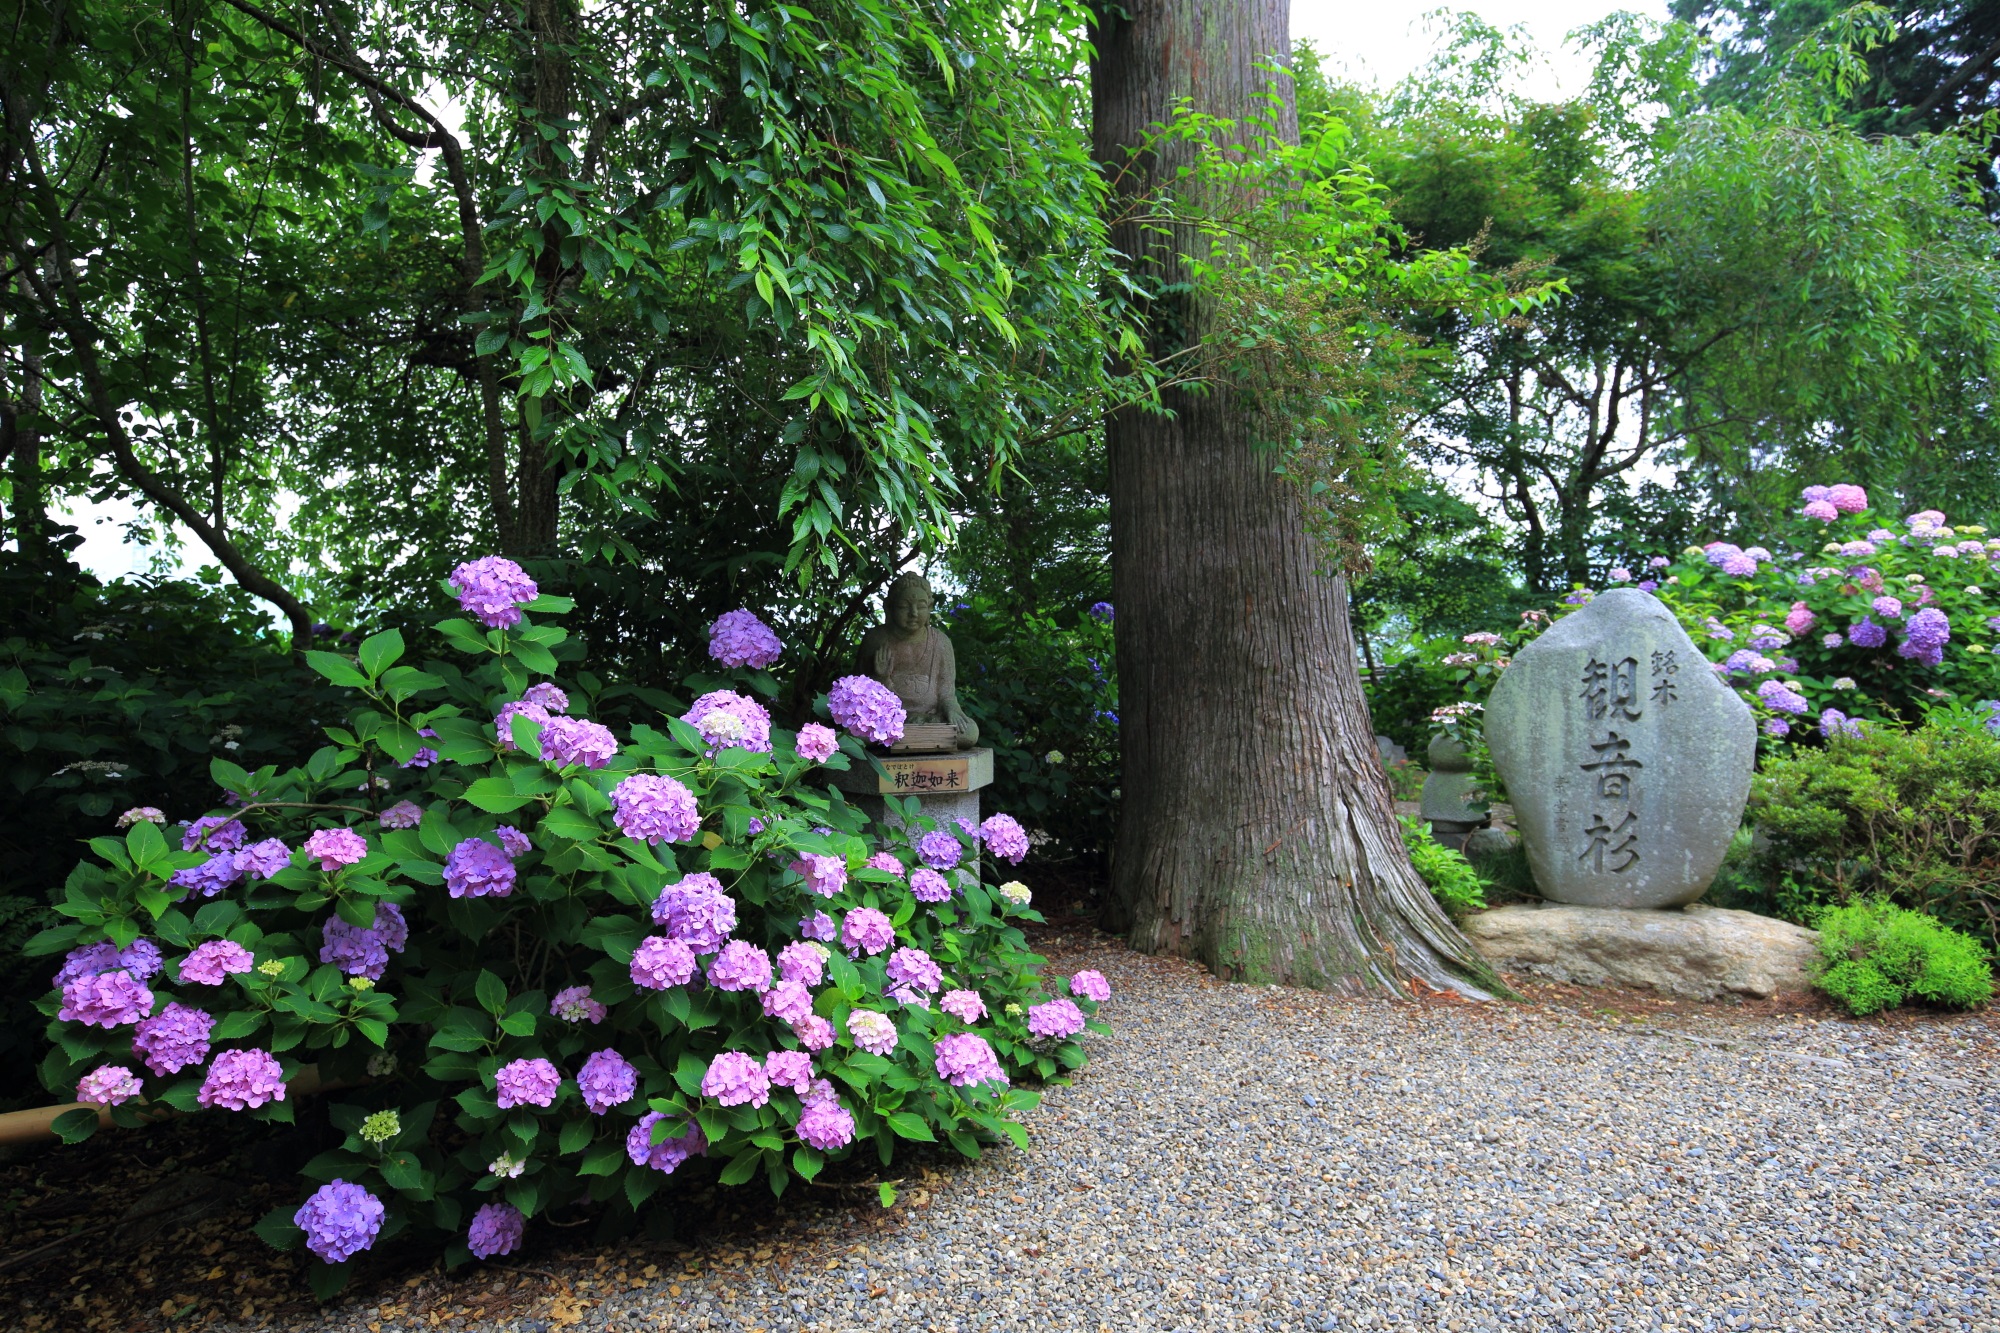 丹州観音寺の観音杉と華やかな紫陽花